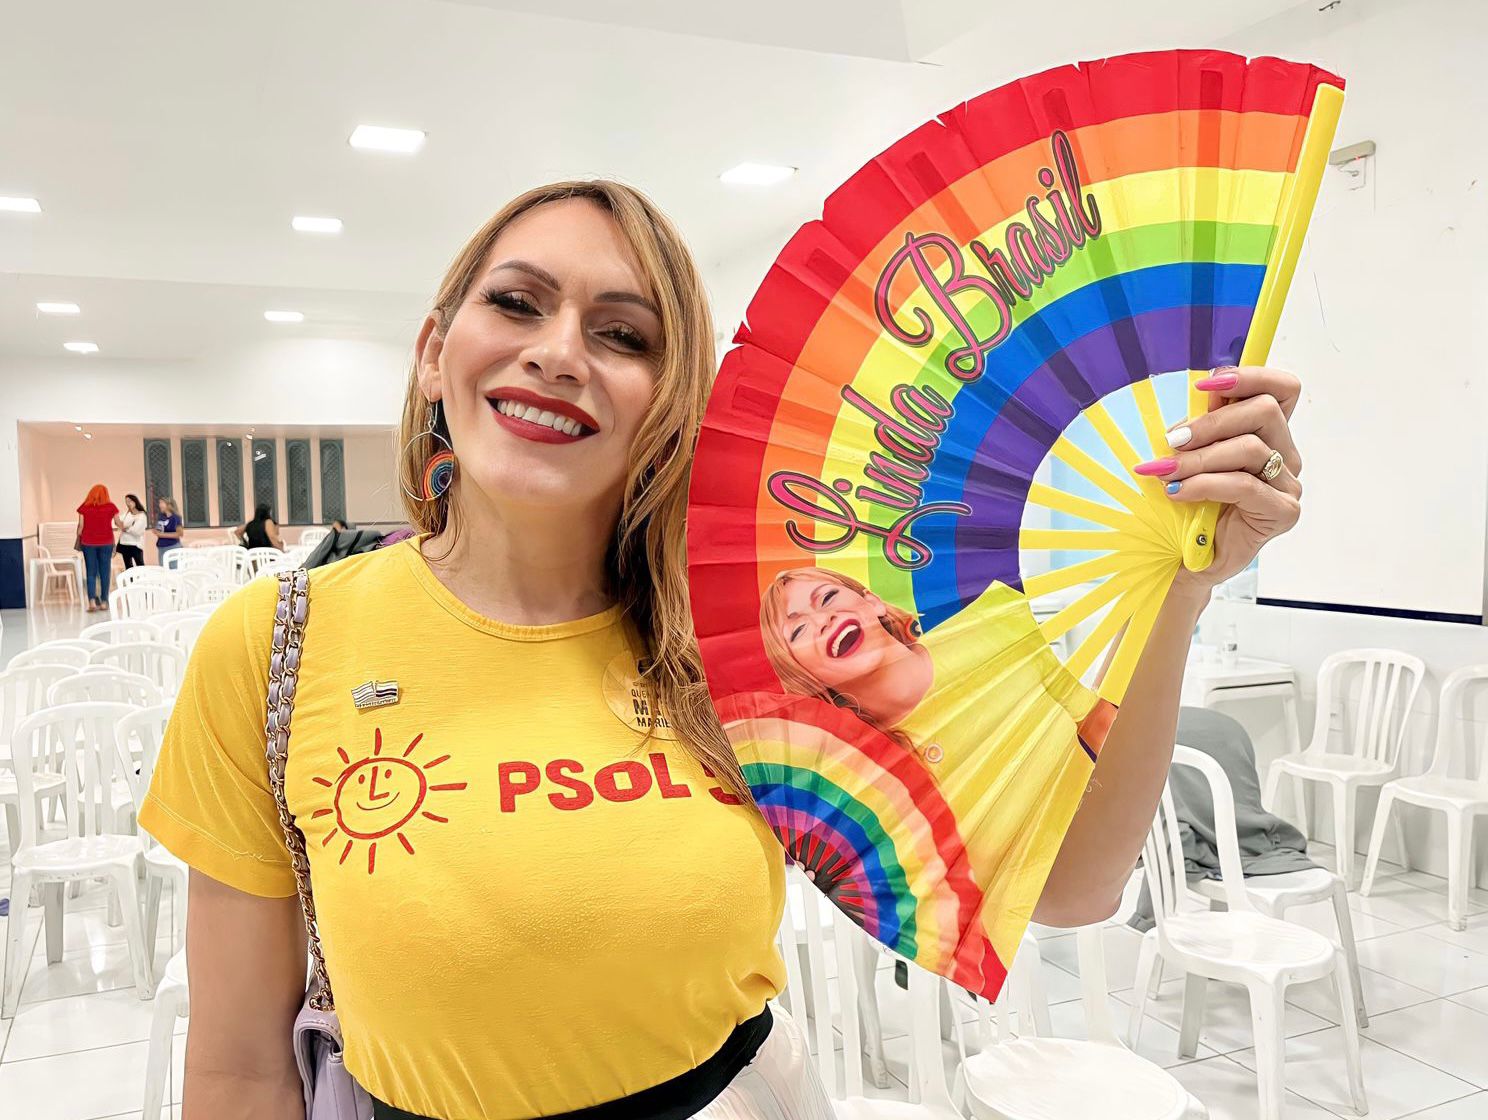 Partidos em números: PSOL